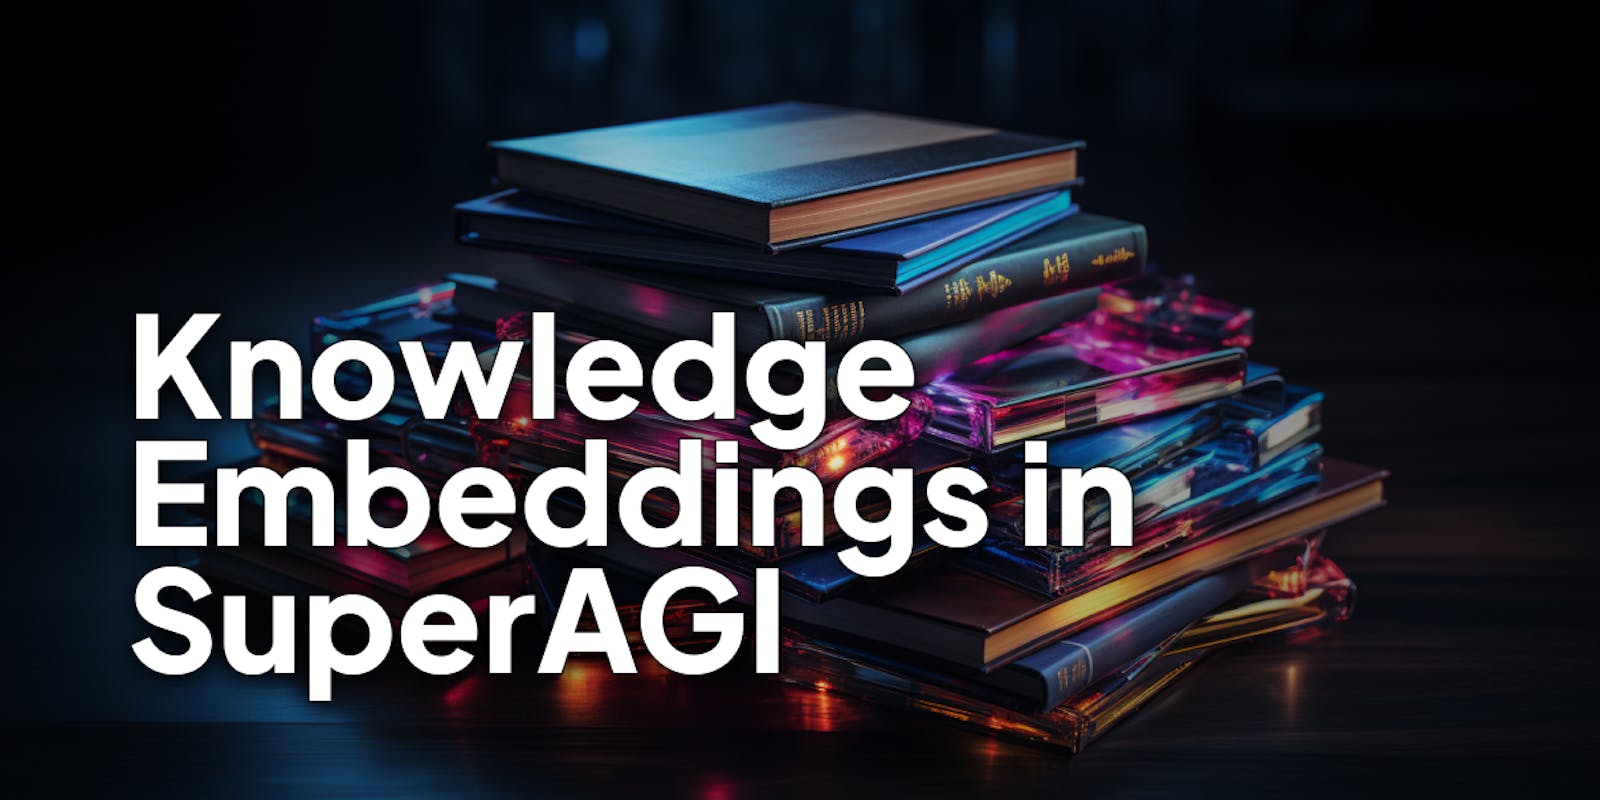 Understanding Knowledge Embeddings in SuperAGI